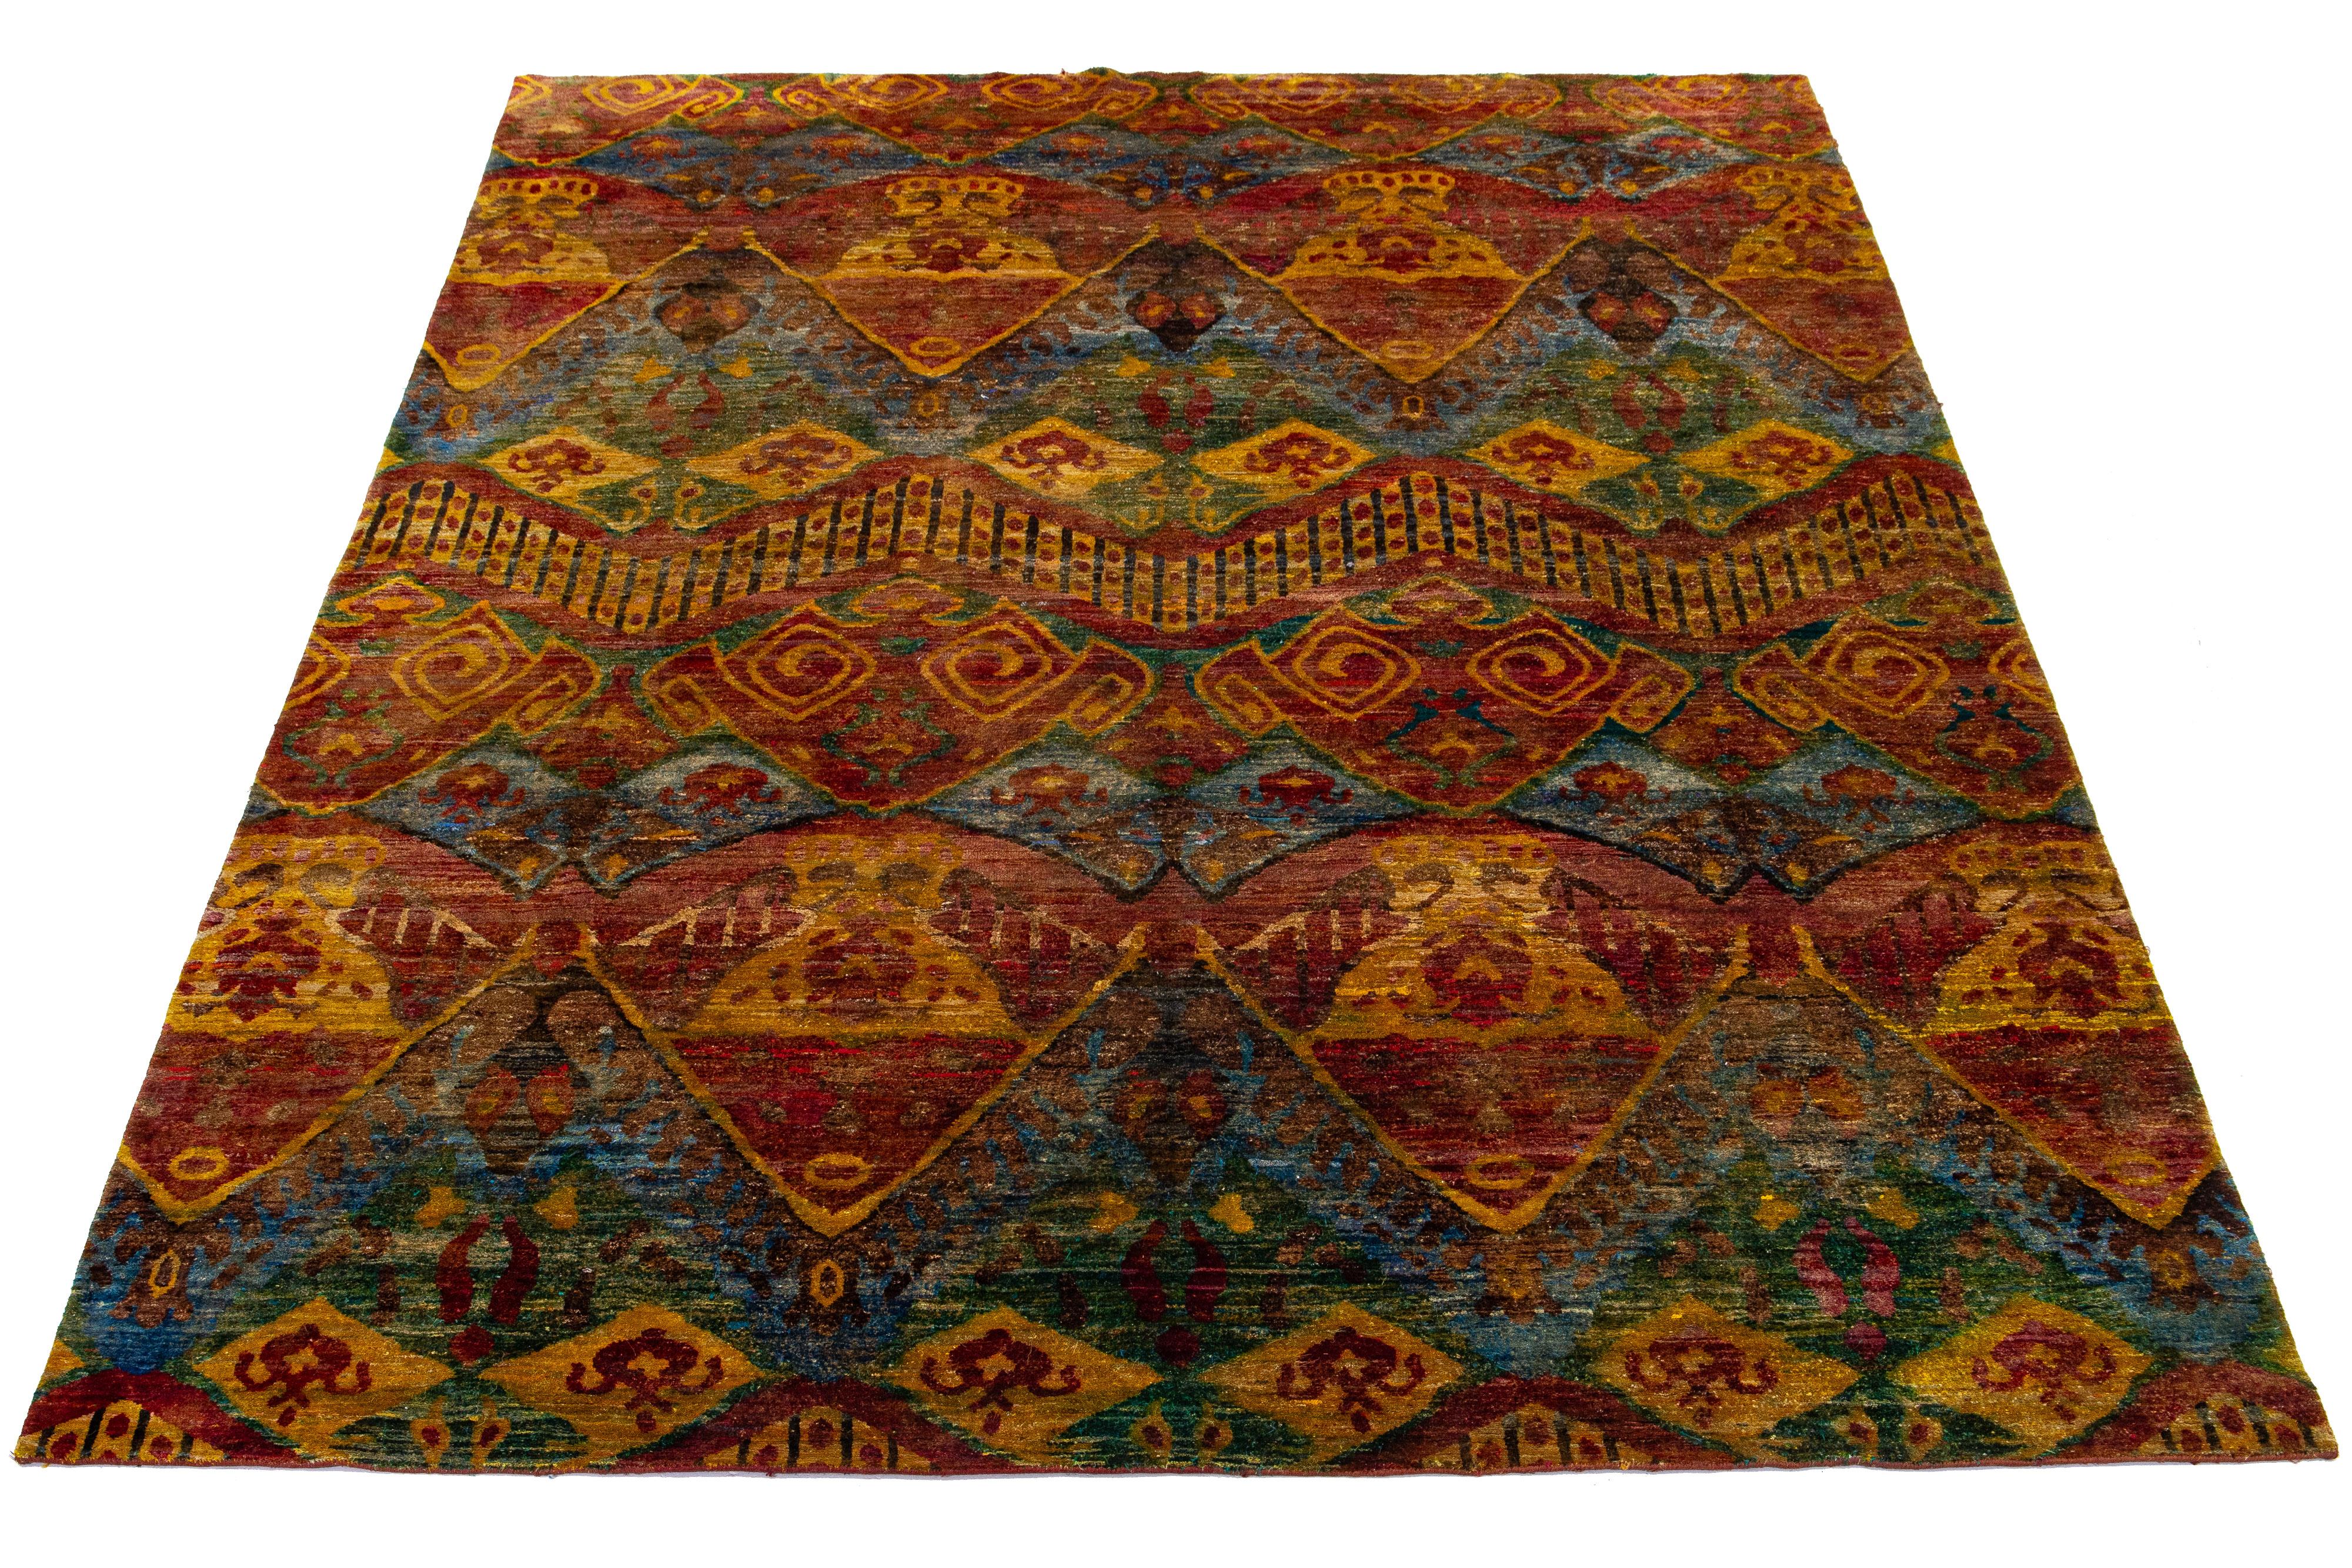 Dieser handgeknüpfte Teppich aus Wolle und Sari-Seide im Bidjar-Stil zeigt ein rostfarbenes Feld. Es ist mit einem atemberaubenden geometrischen Muster gestaltet und wird durch goldene, blaue, grüne und braune Farbtöne akzentuiert, die ihm einen